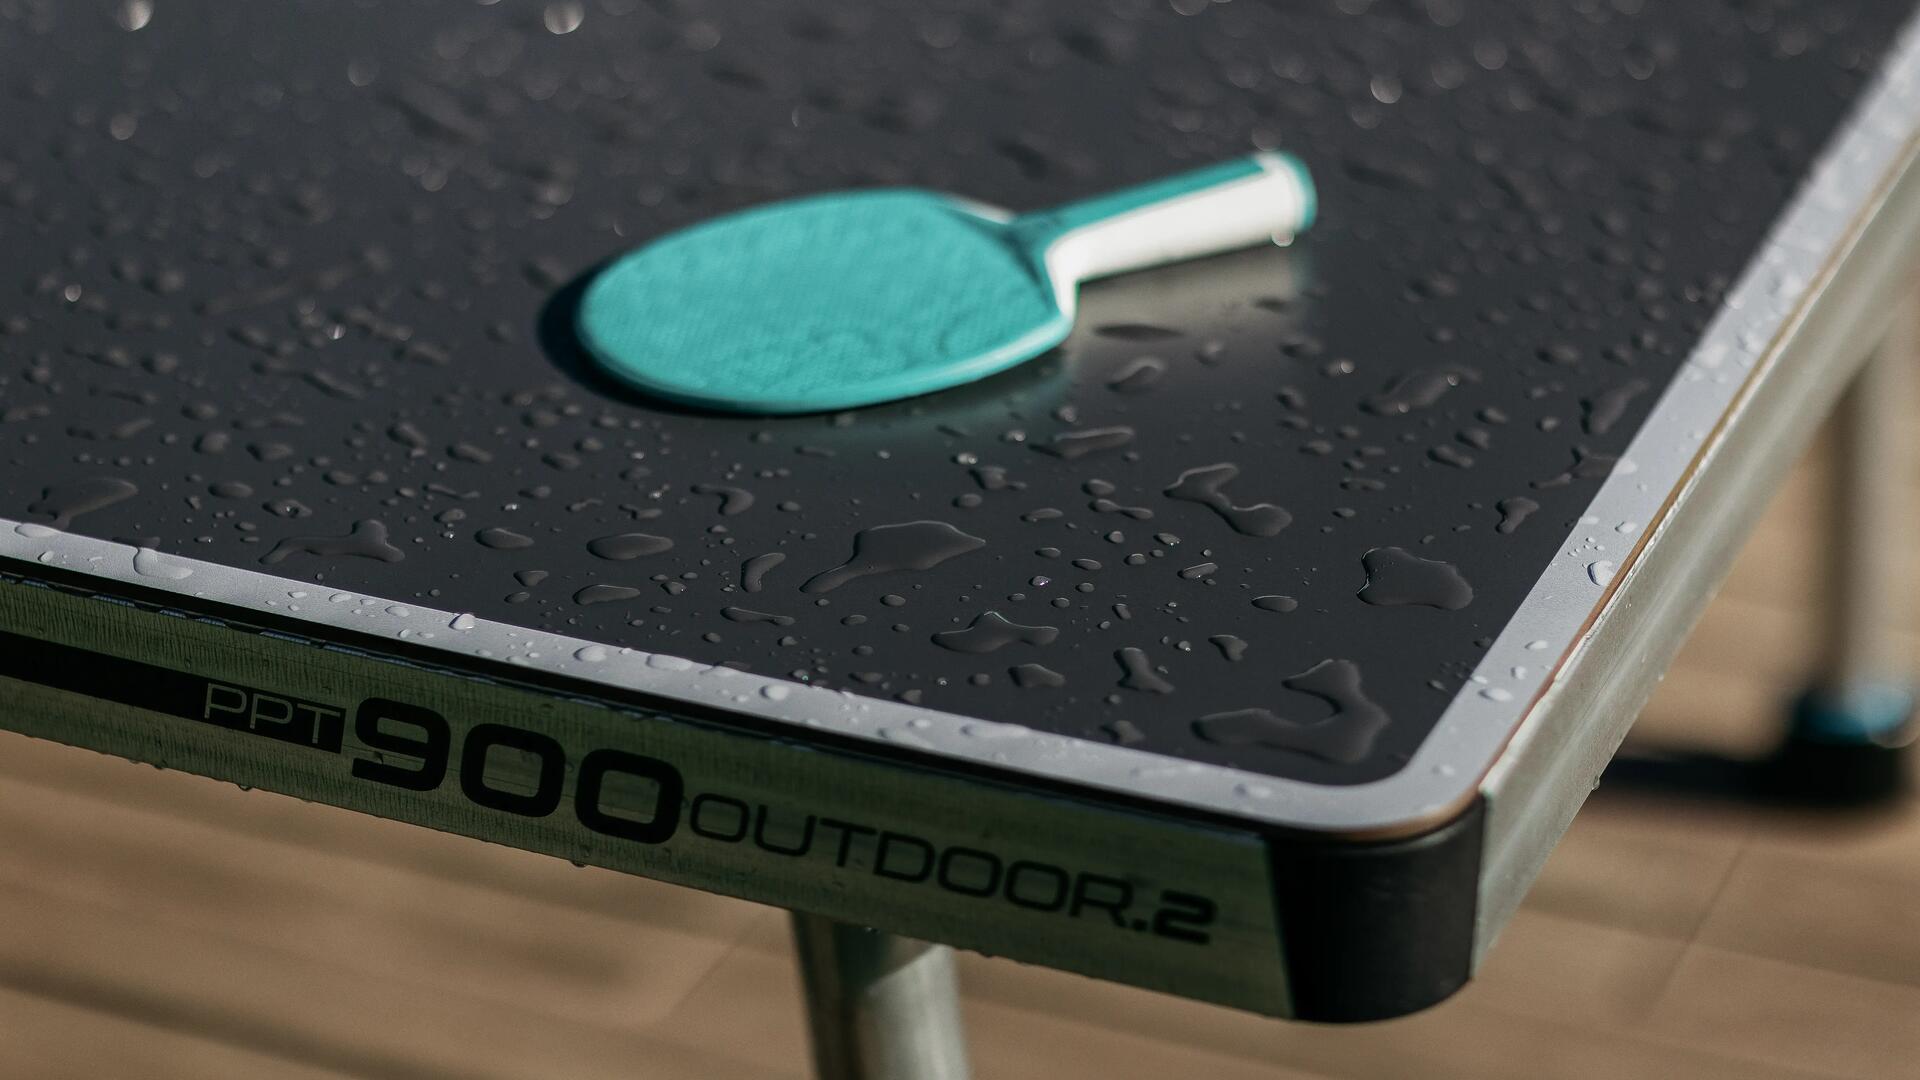 Raqueta de tenis de mesa colocada en la mesa de tenis de mesa para exteriores PPT900 OUTDOOR .2